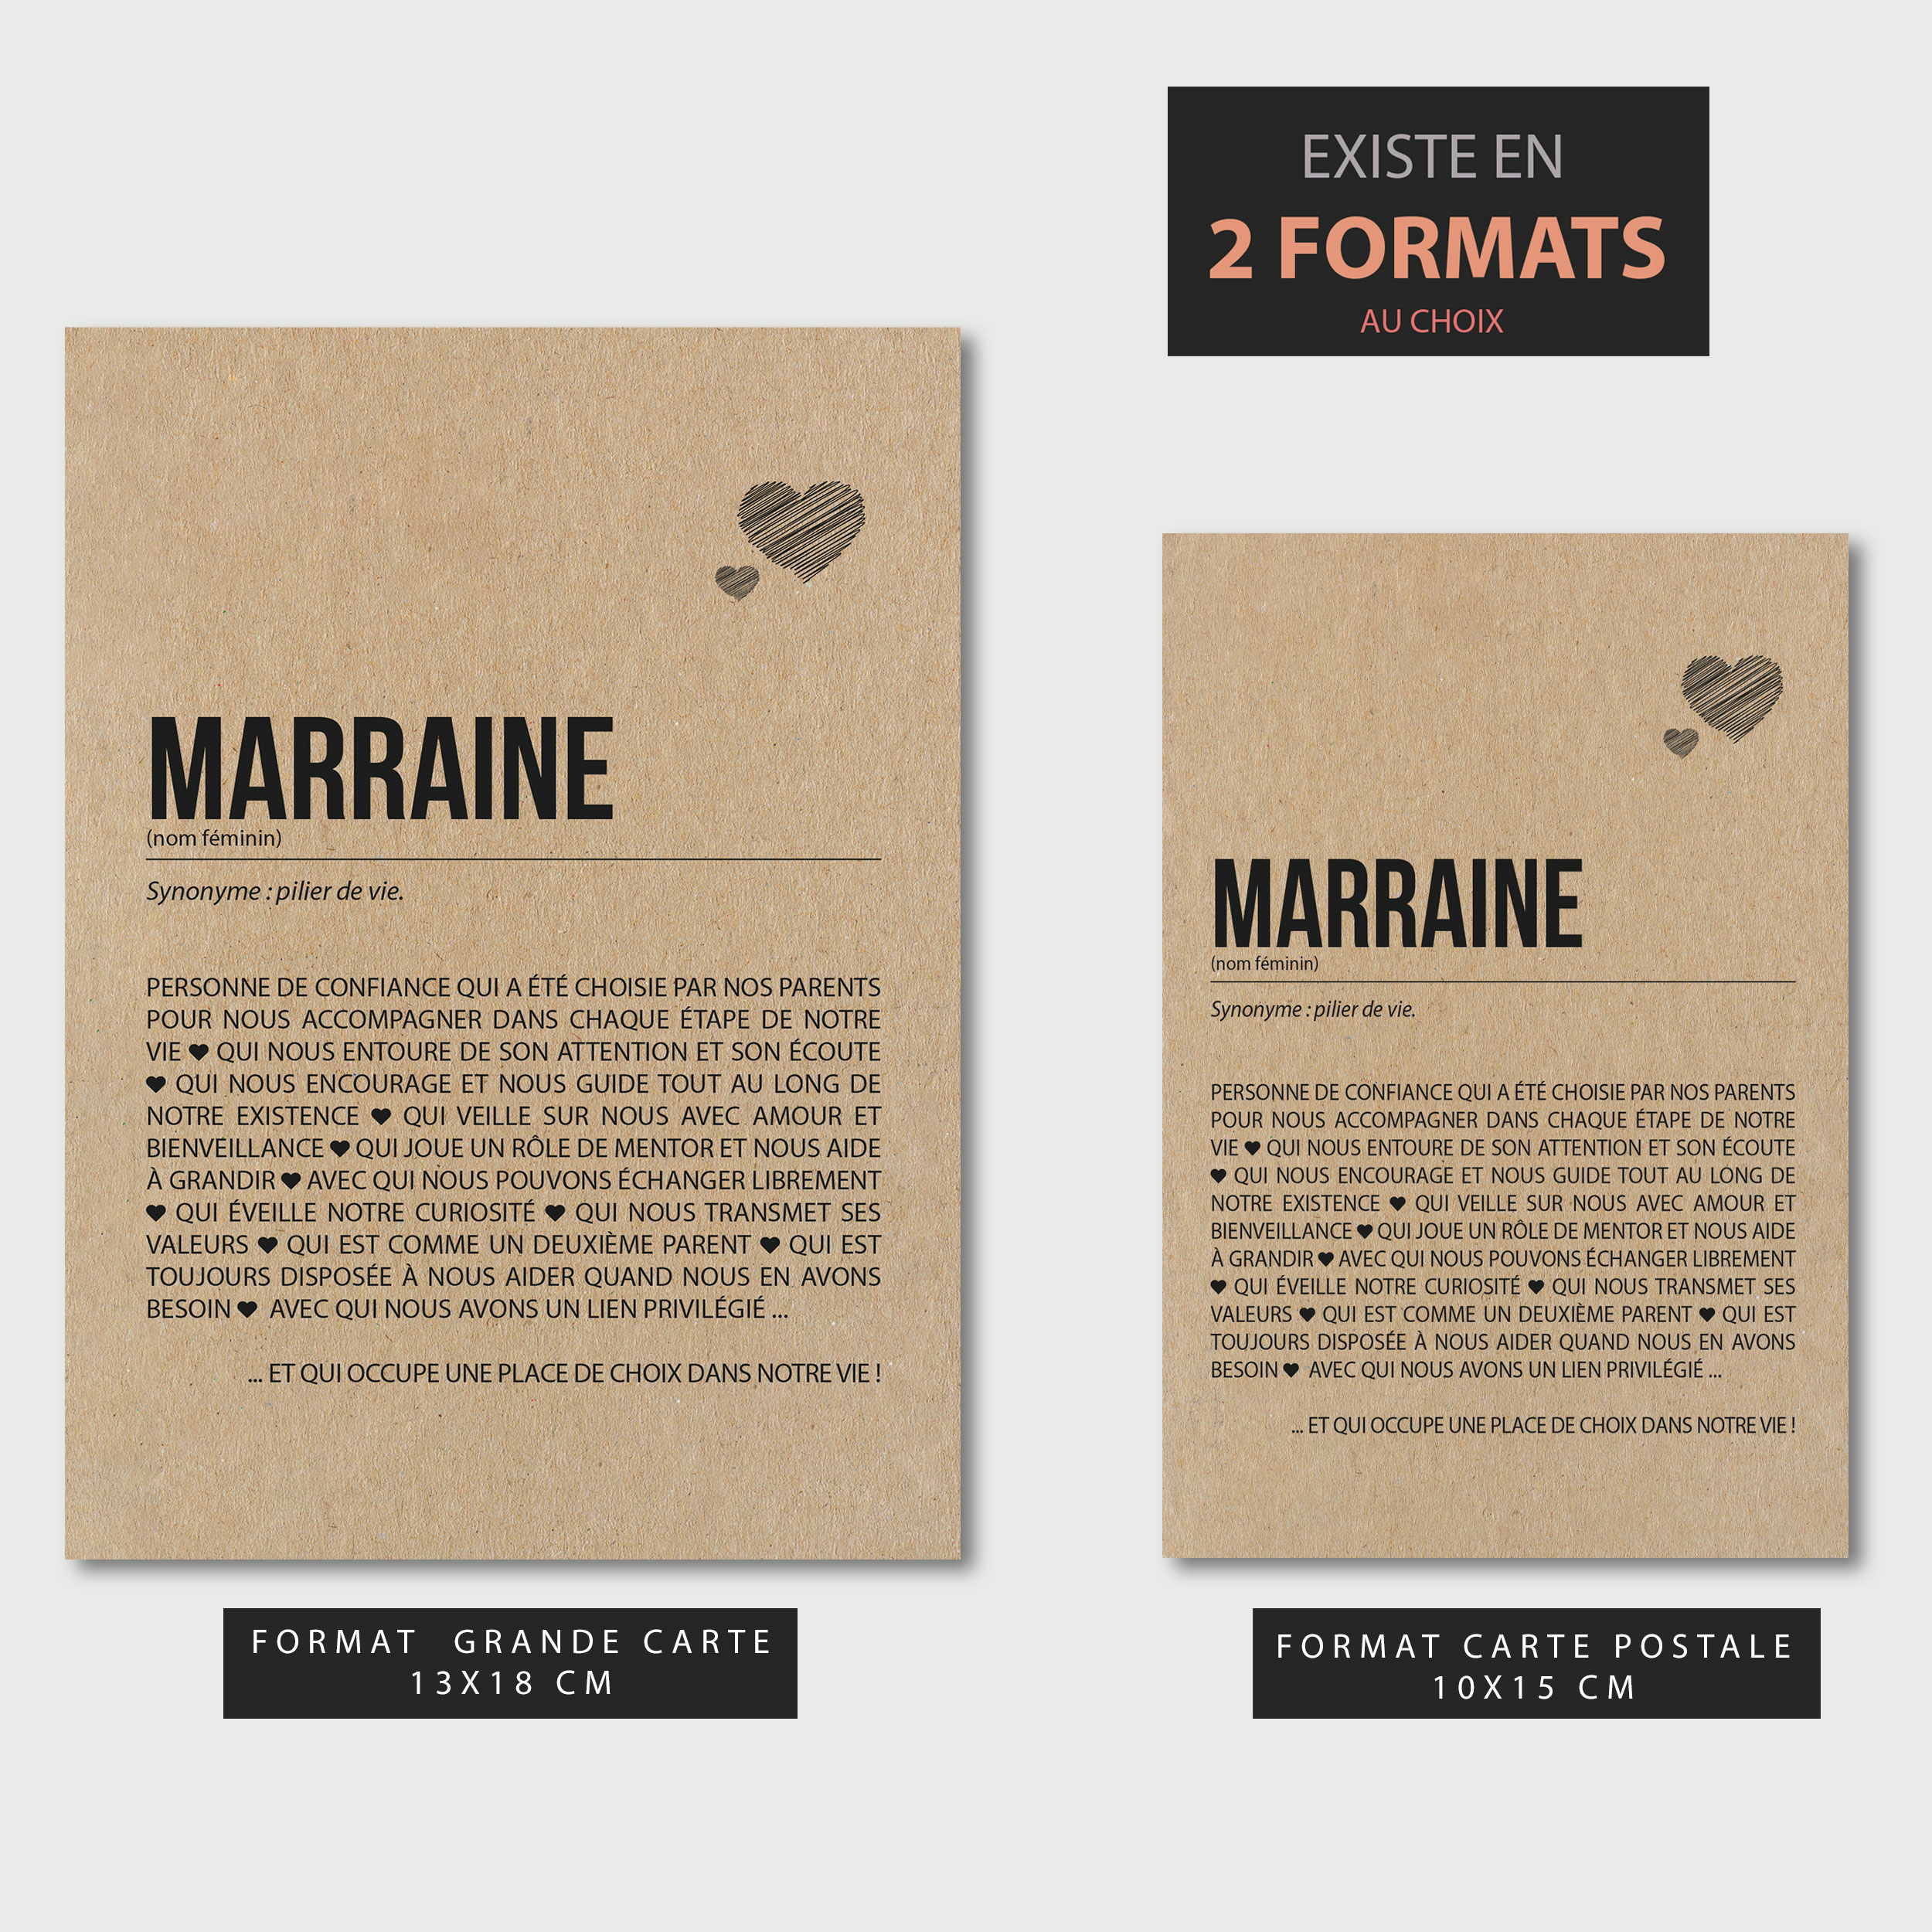 2FORMATS-MARRAINE